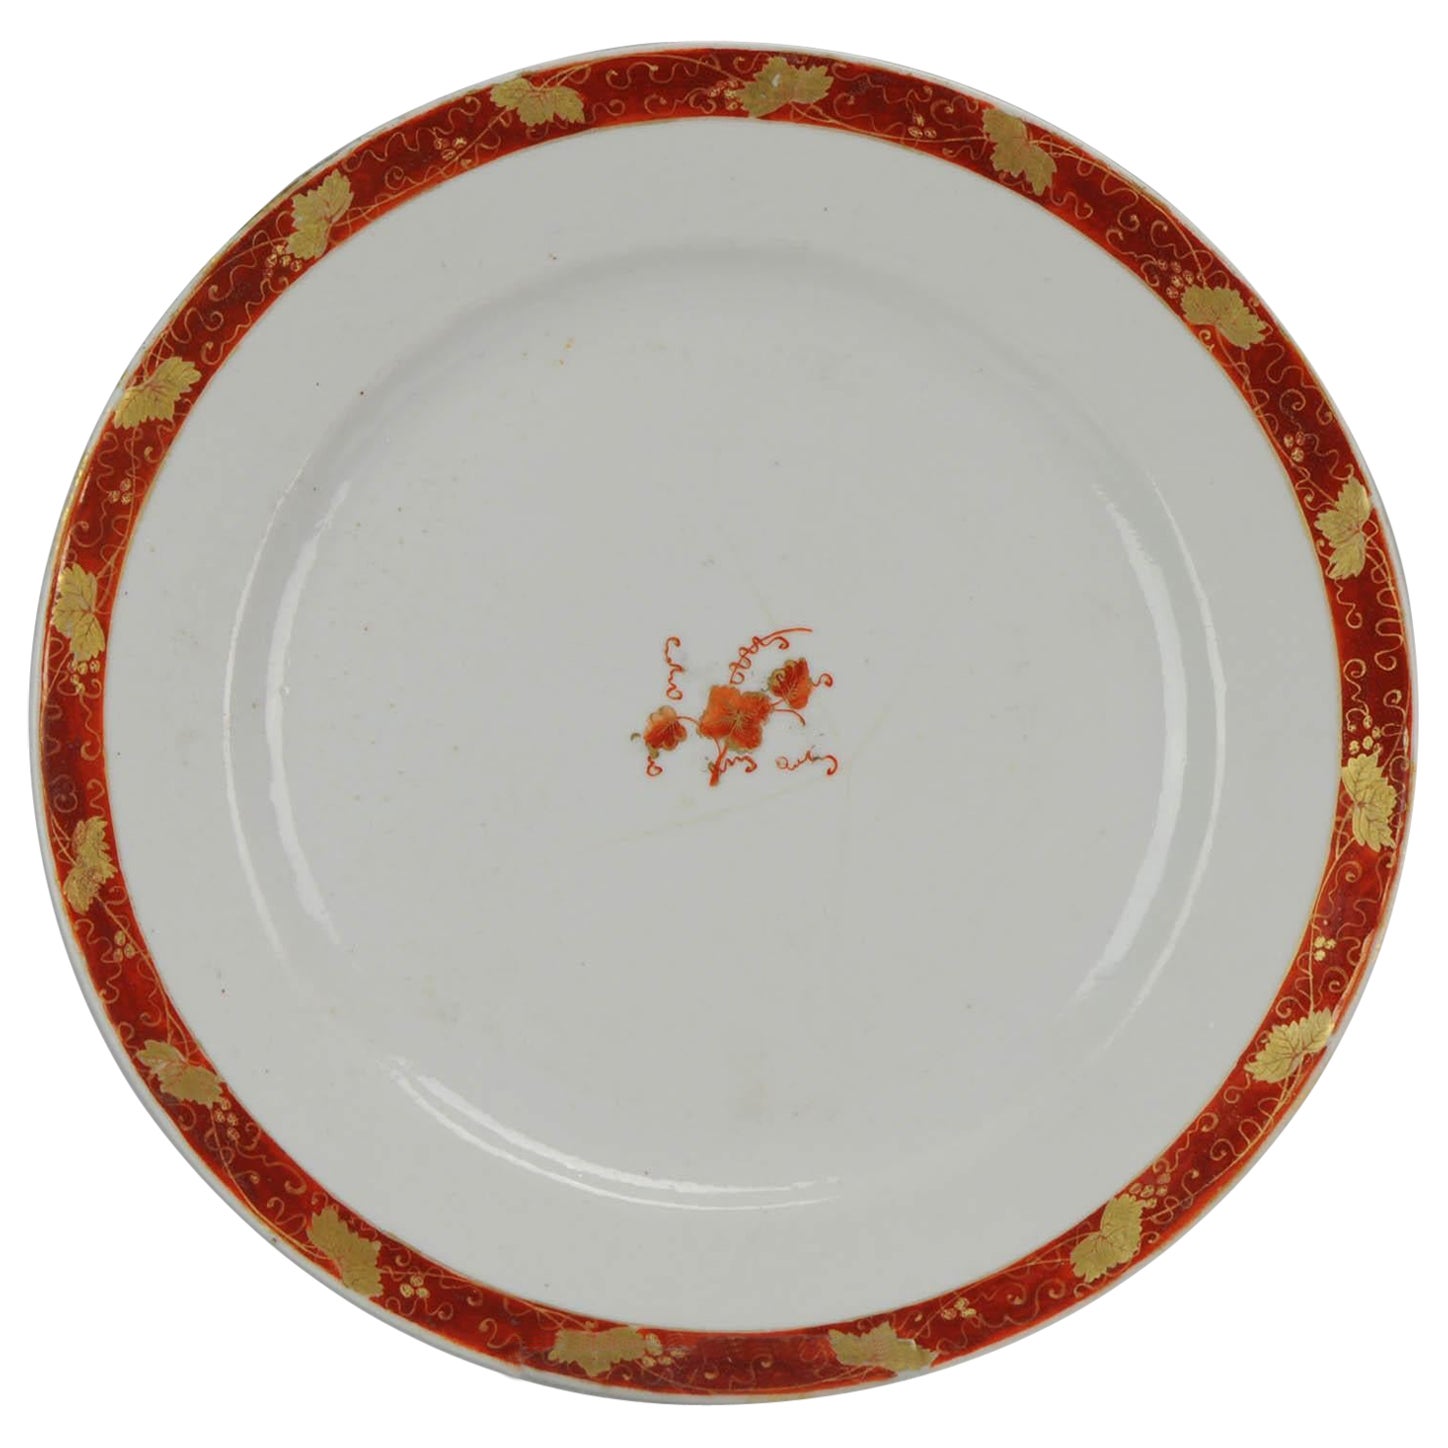 Antique Plate Rouge de Fer Porcelain China Qianlong / Jiajing